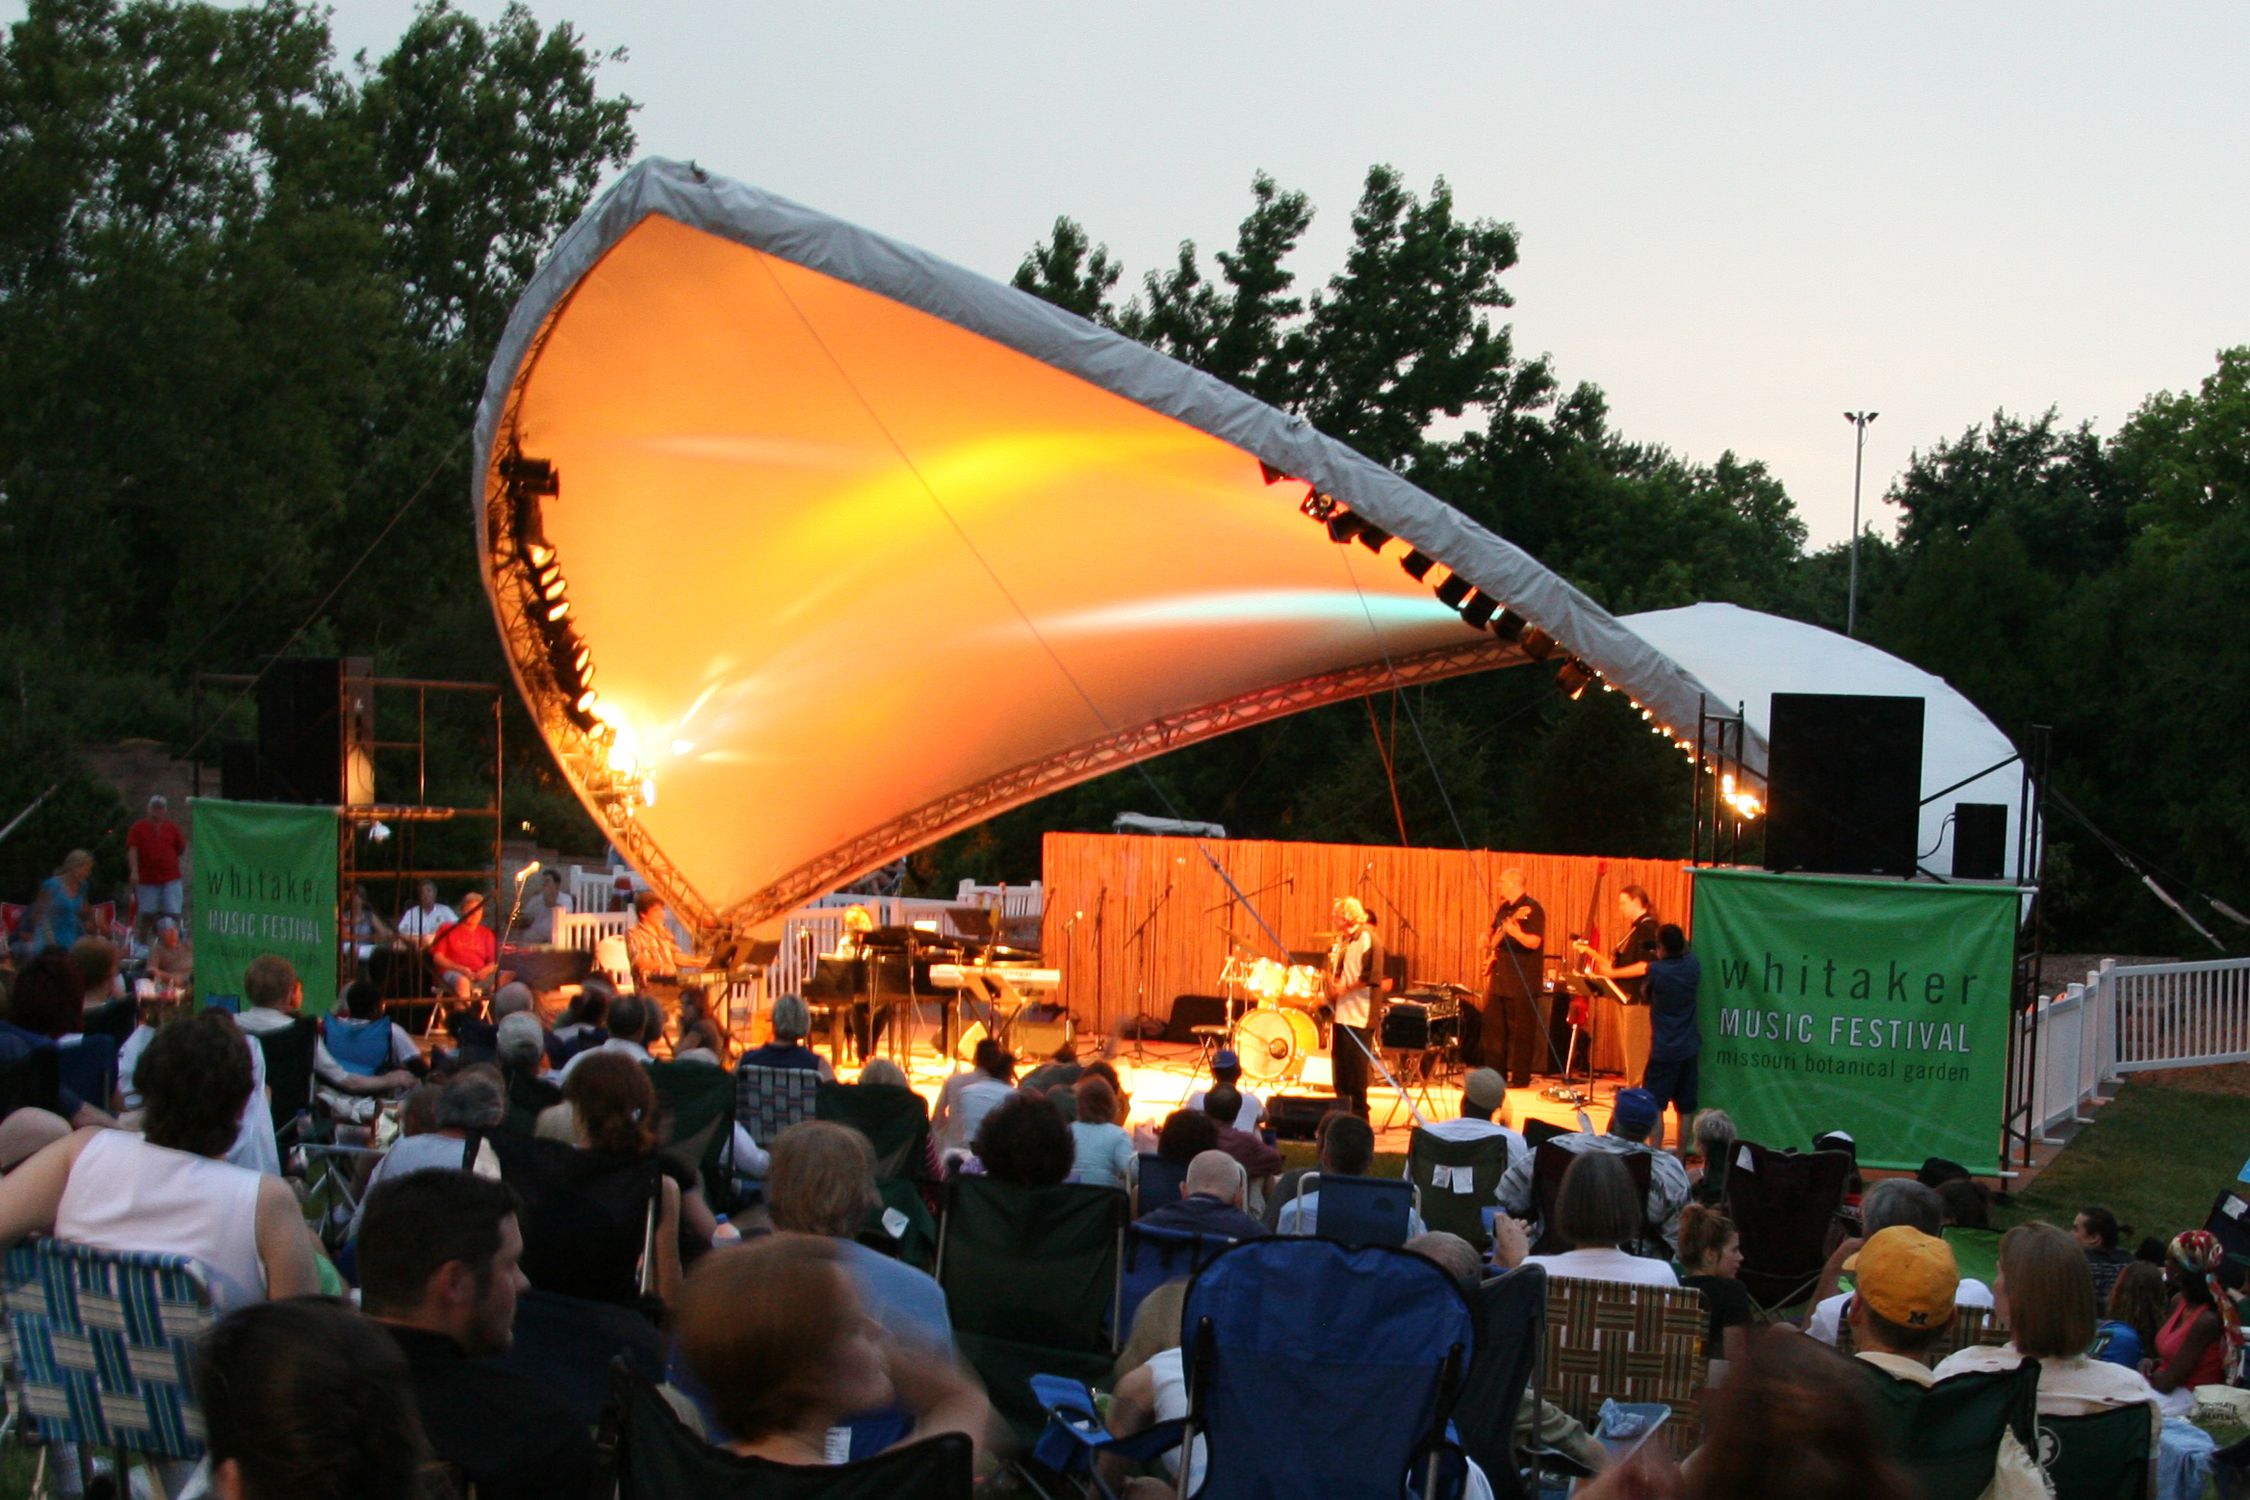 Whitaker Music Festival at the Missouri Botanical Garden